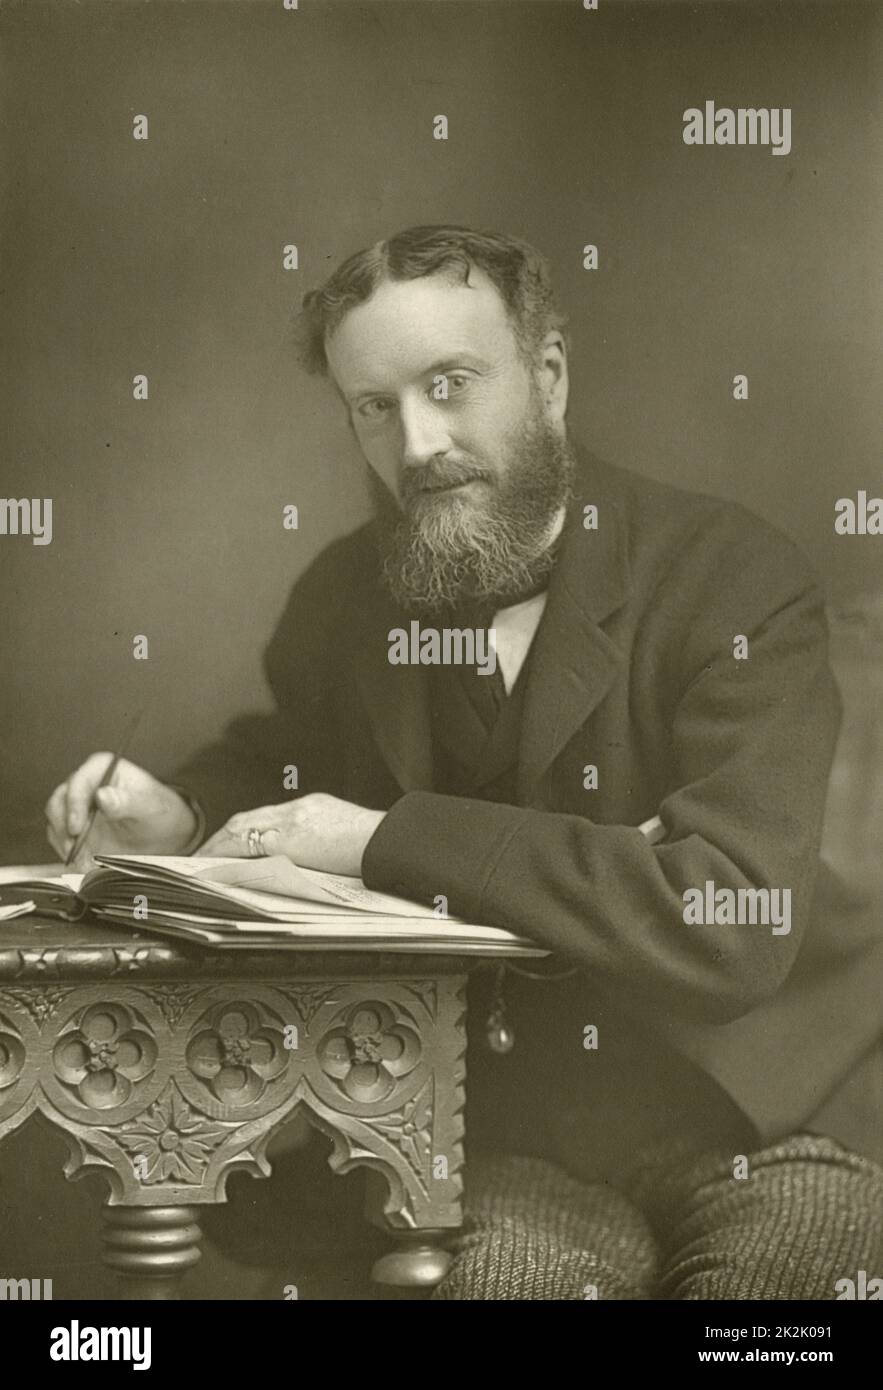 Michael Edward Hicks Beach (1837-1916) nella foto del c1890, creò il 1lst Earl St Aldwyn nel 1915, politico conservatore britannico che servì come Cancelliere dello scacchiere 1885-1886 e 1895-1902. Foto Stock